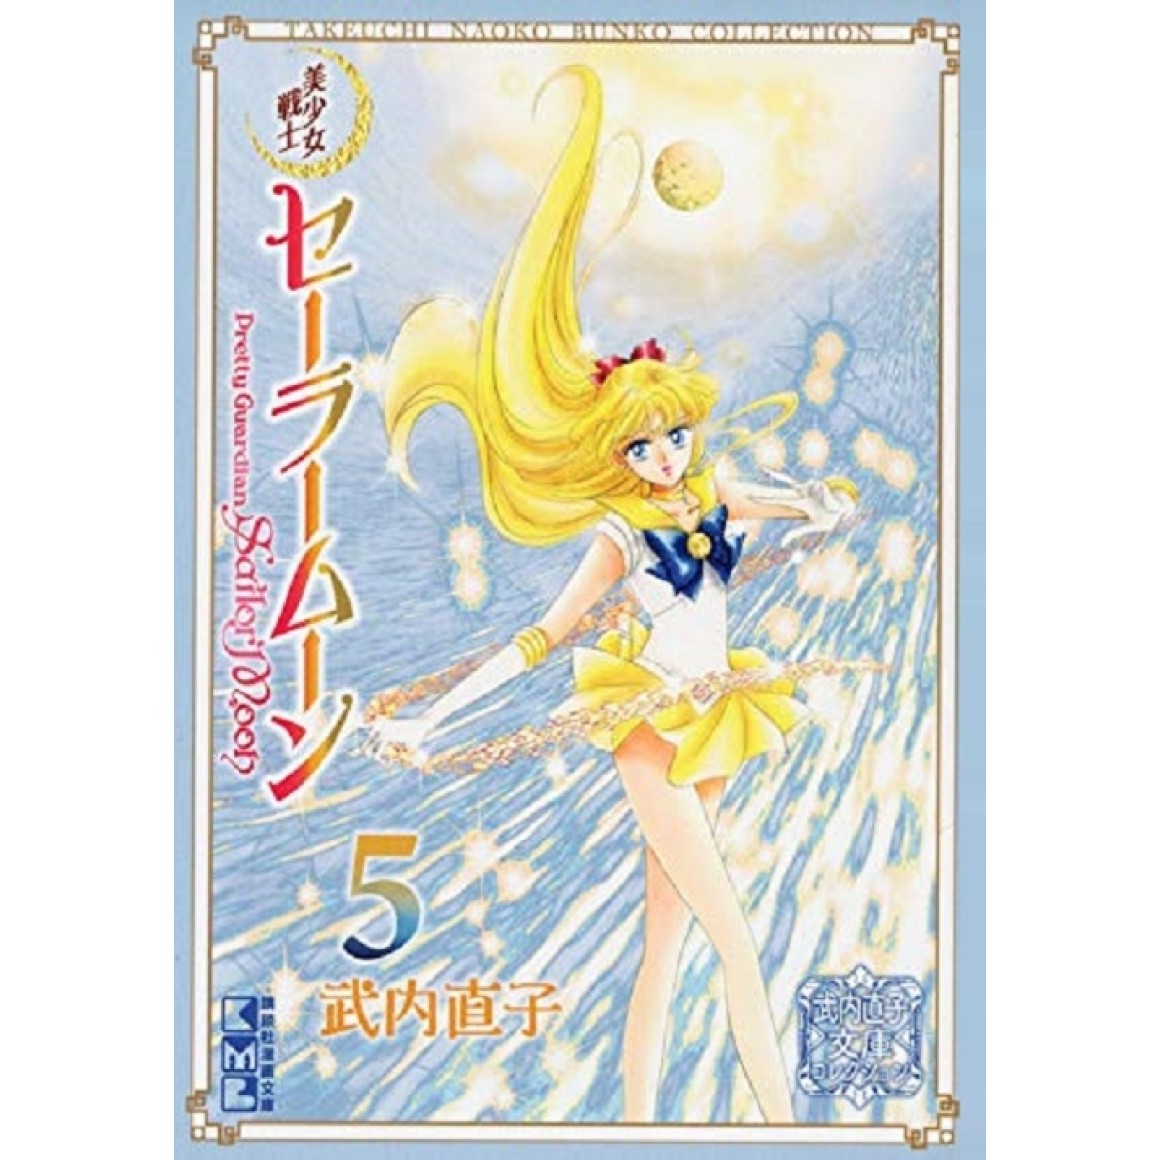 Sailor Moon Crystal 3 – arte do 2º volume